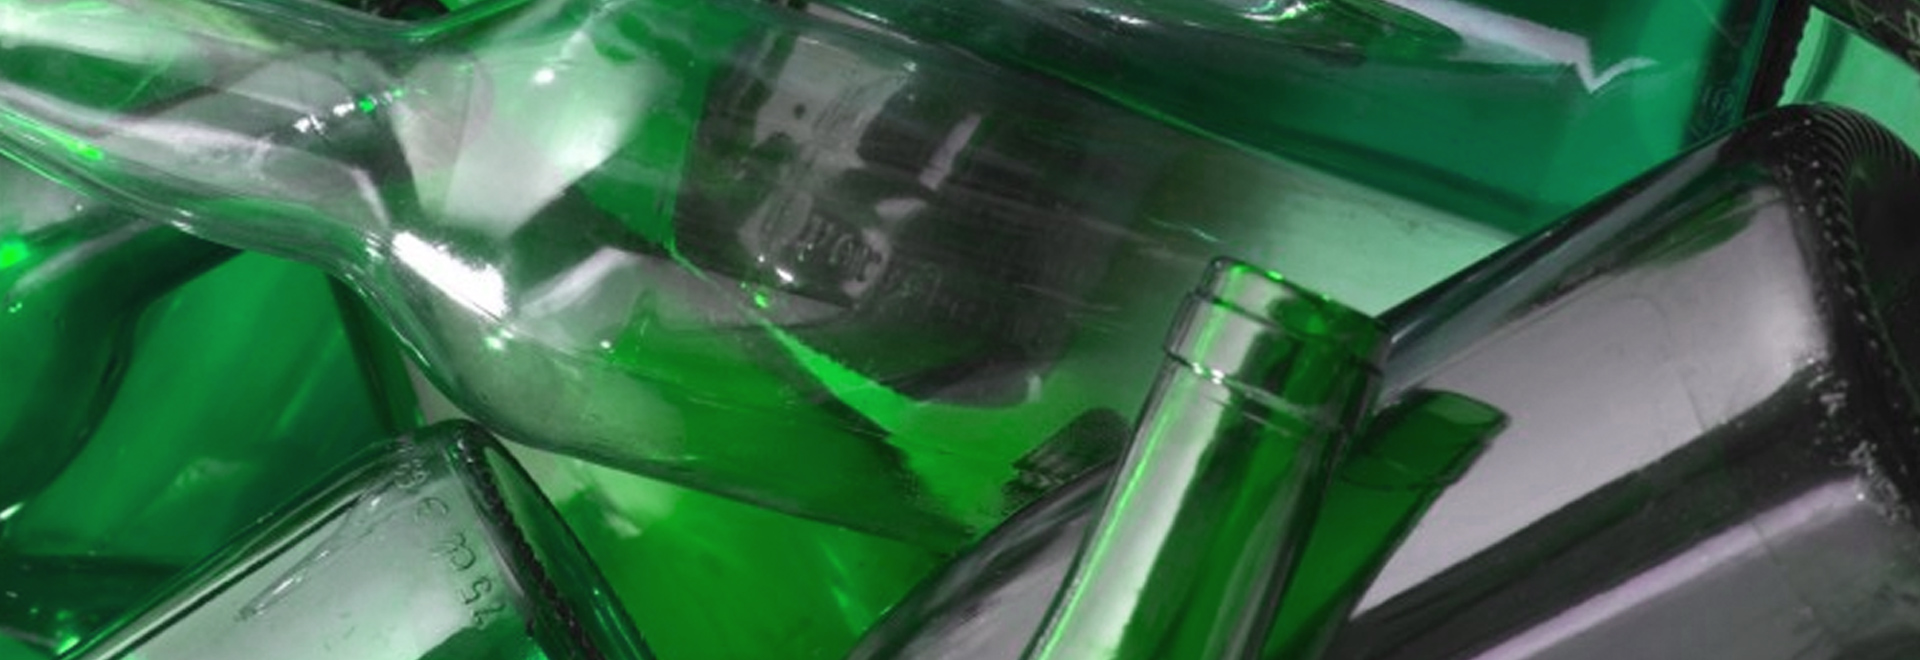 Comunicato stampa: Castellanza si aggiudica il Green Award per la raccolta differenziata del vetro